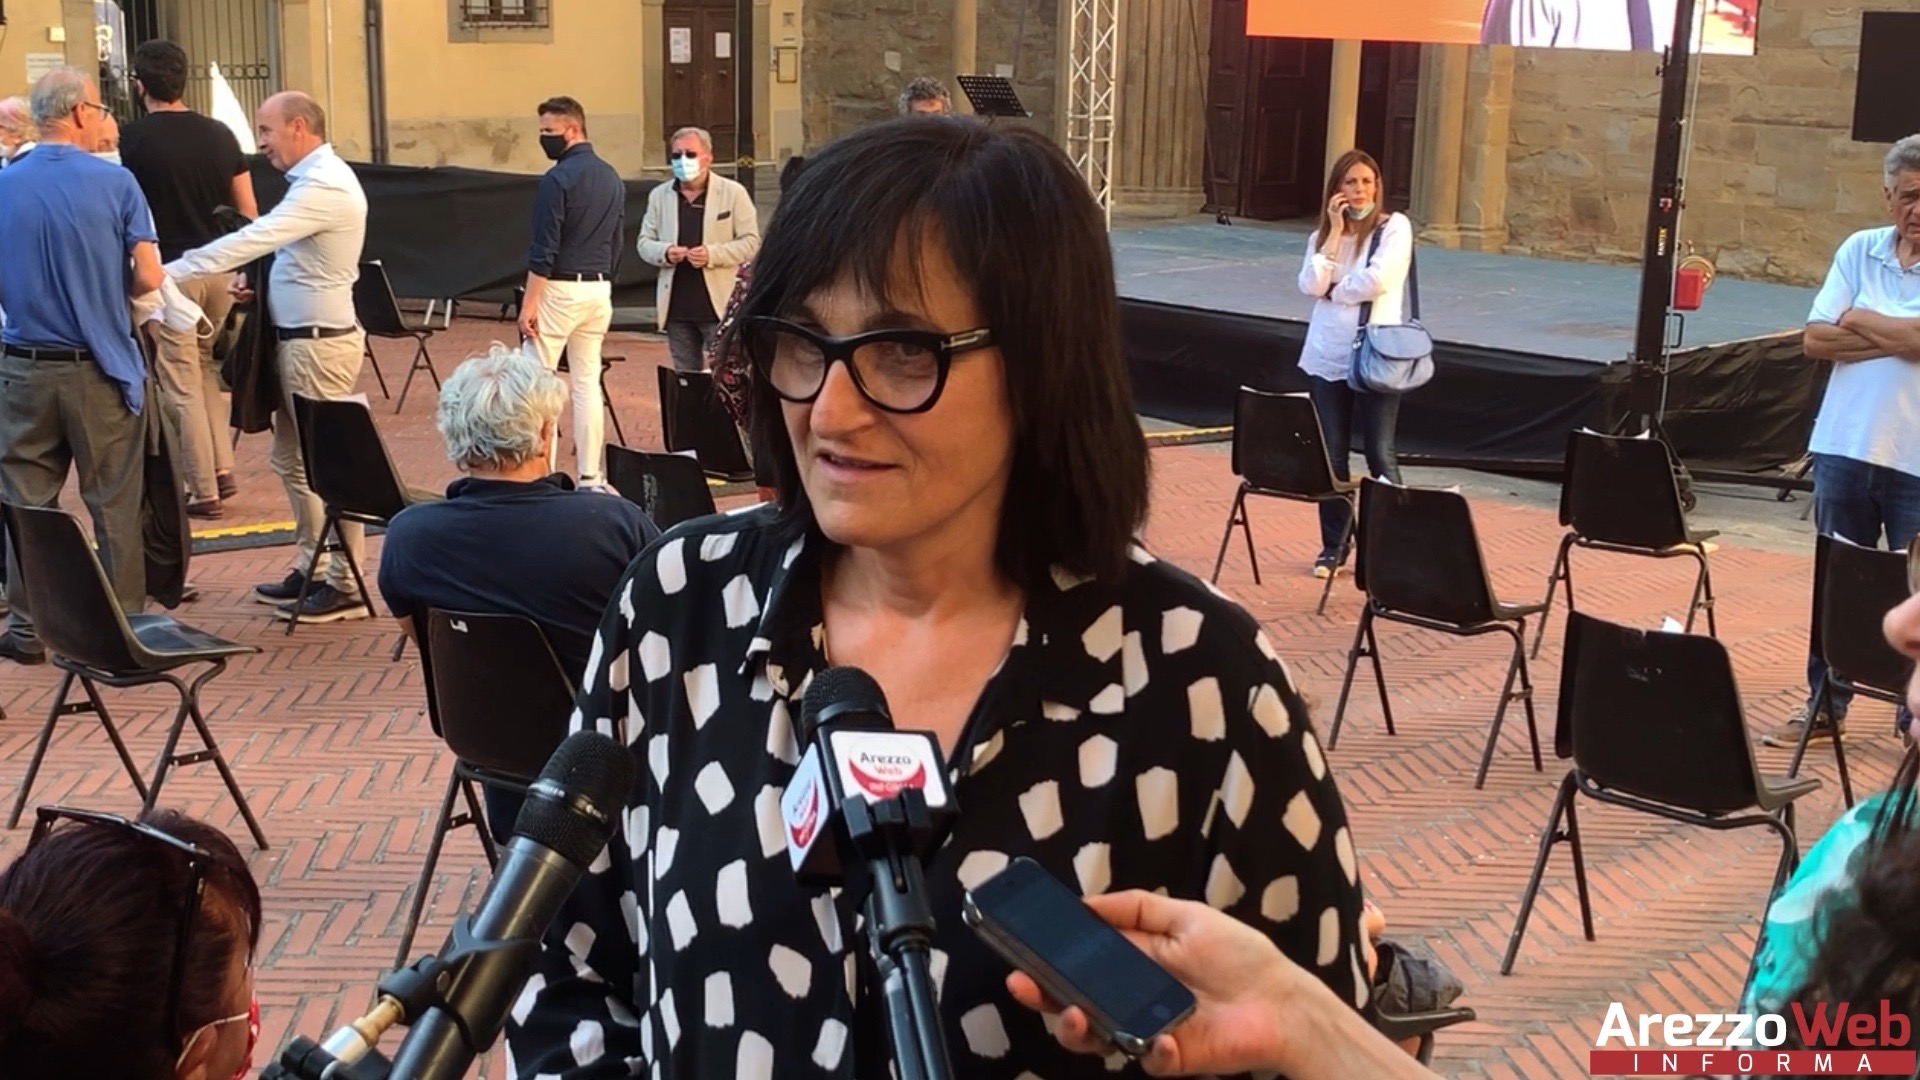 Arezzo, Sociale, De Robertis (PD): “Quasi 6 milioni di euro in provincia di Arezzo per Non Autosufficienza e Vita Indipendente”